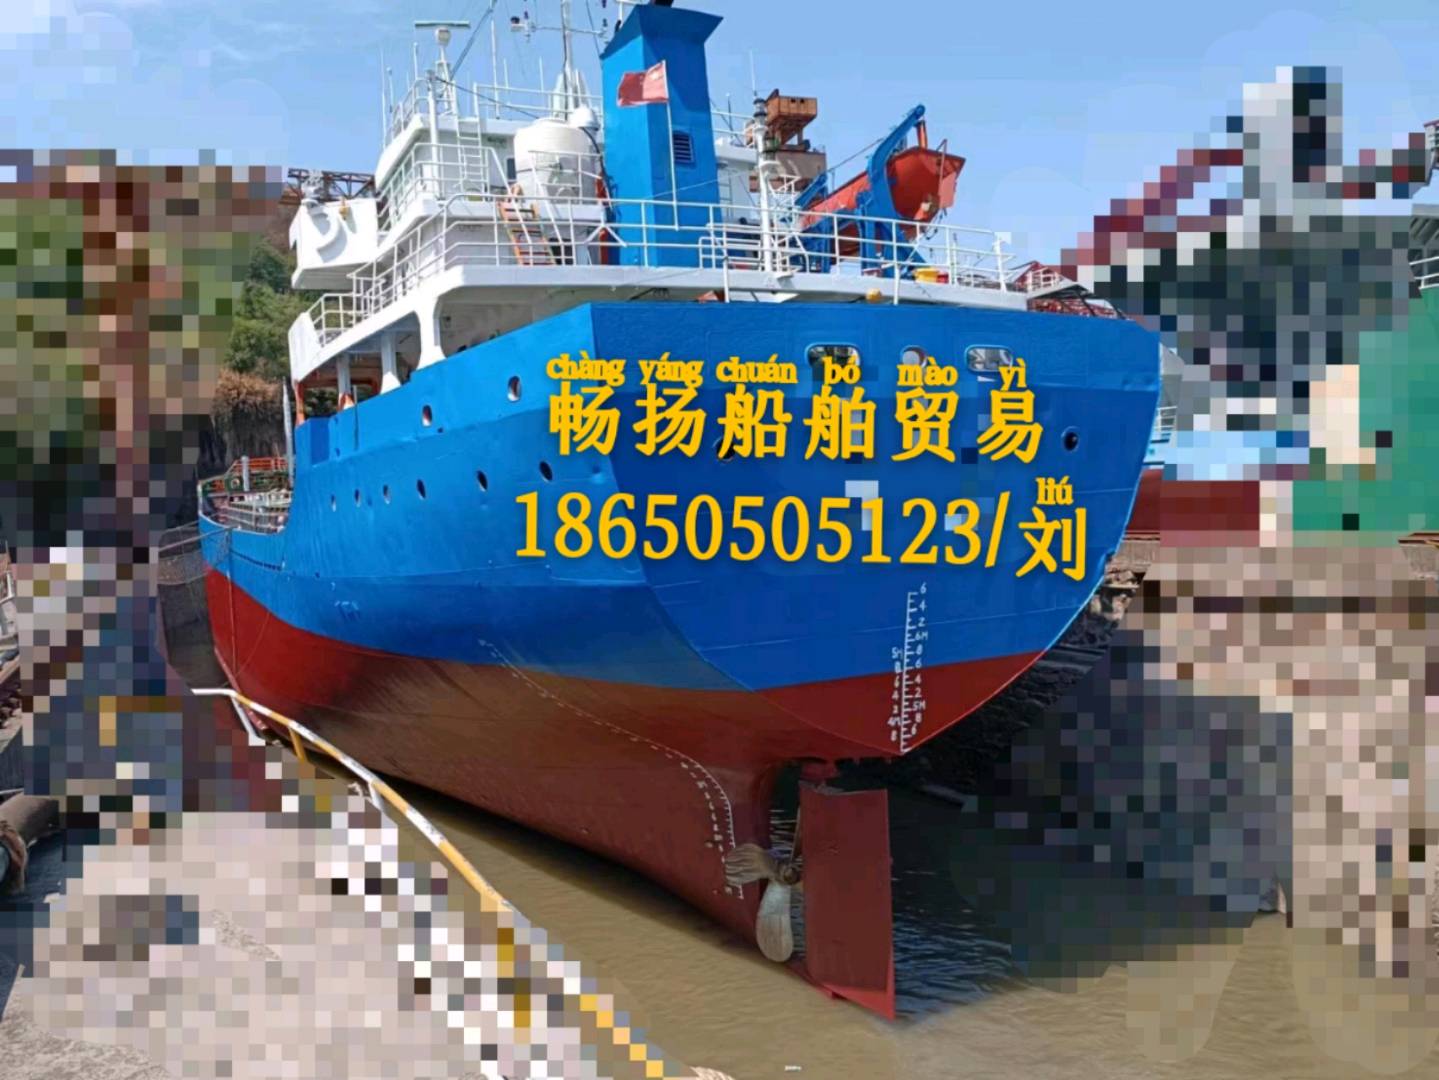 出售05年3200吨货船